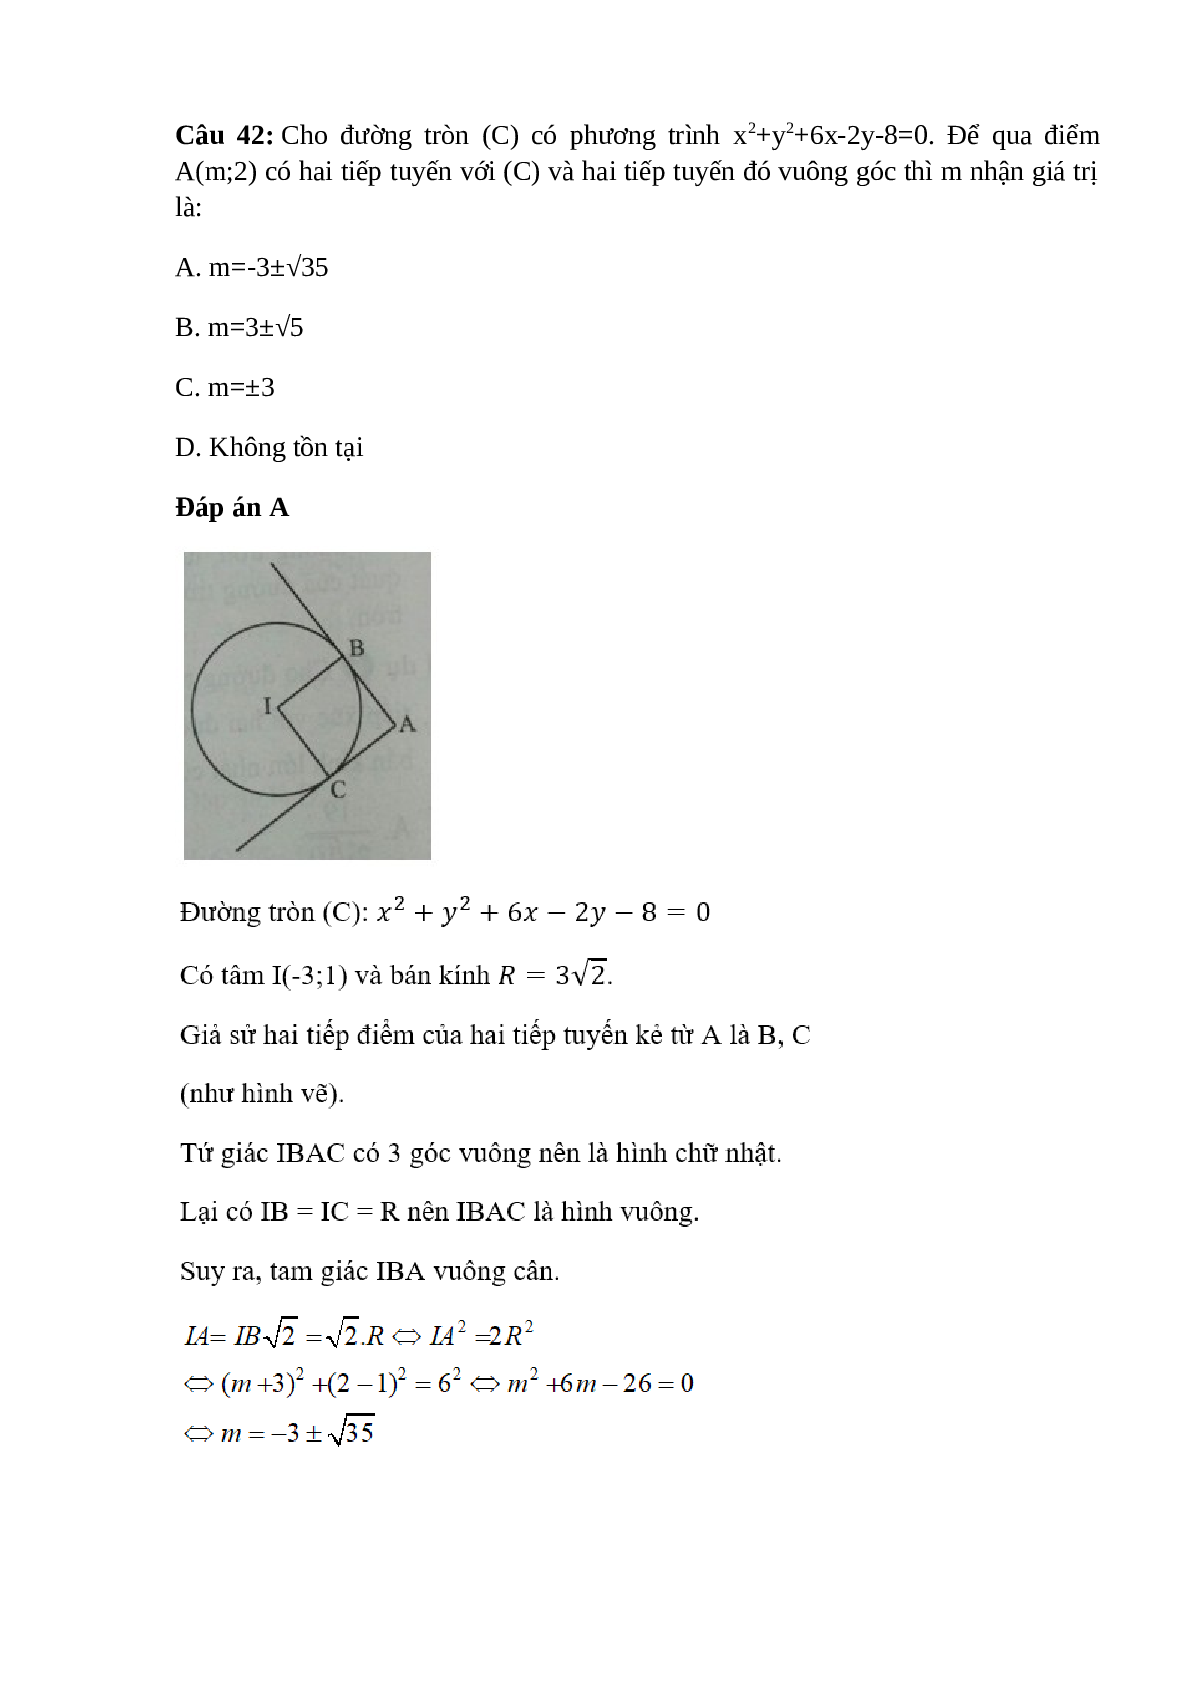 Trắc nghiệm Phương trình đường tròn (phần 3) có đáp án – Toán lớp 10 (trang 8)